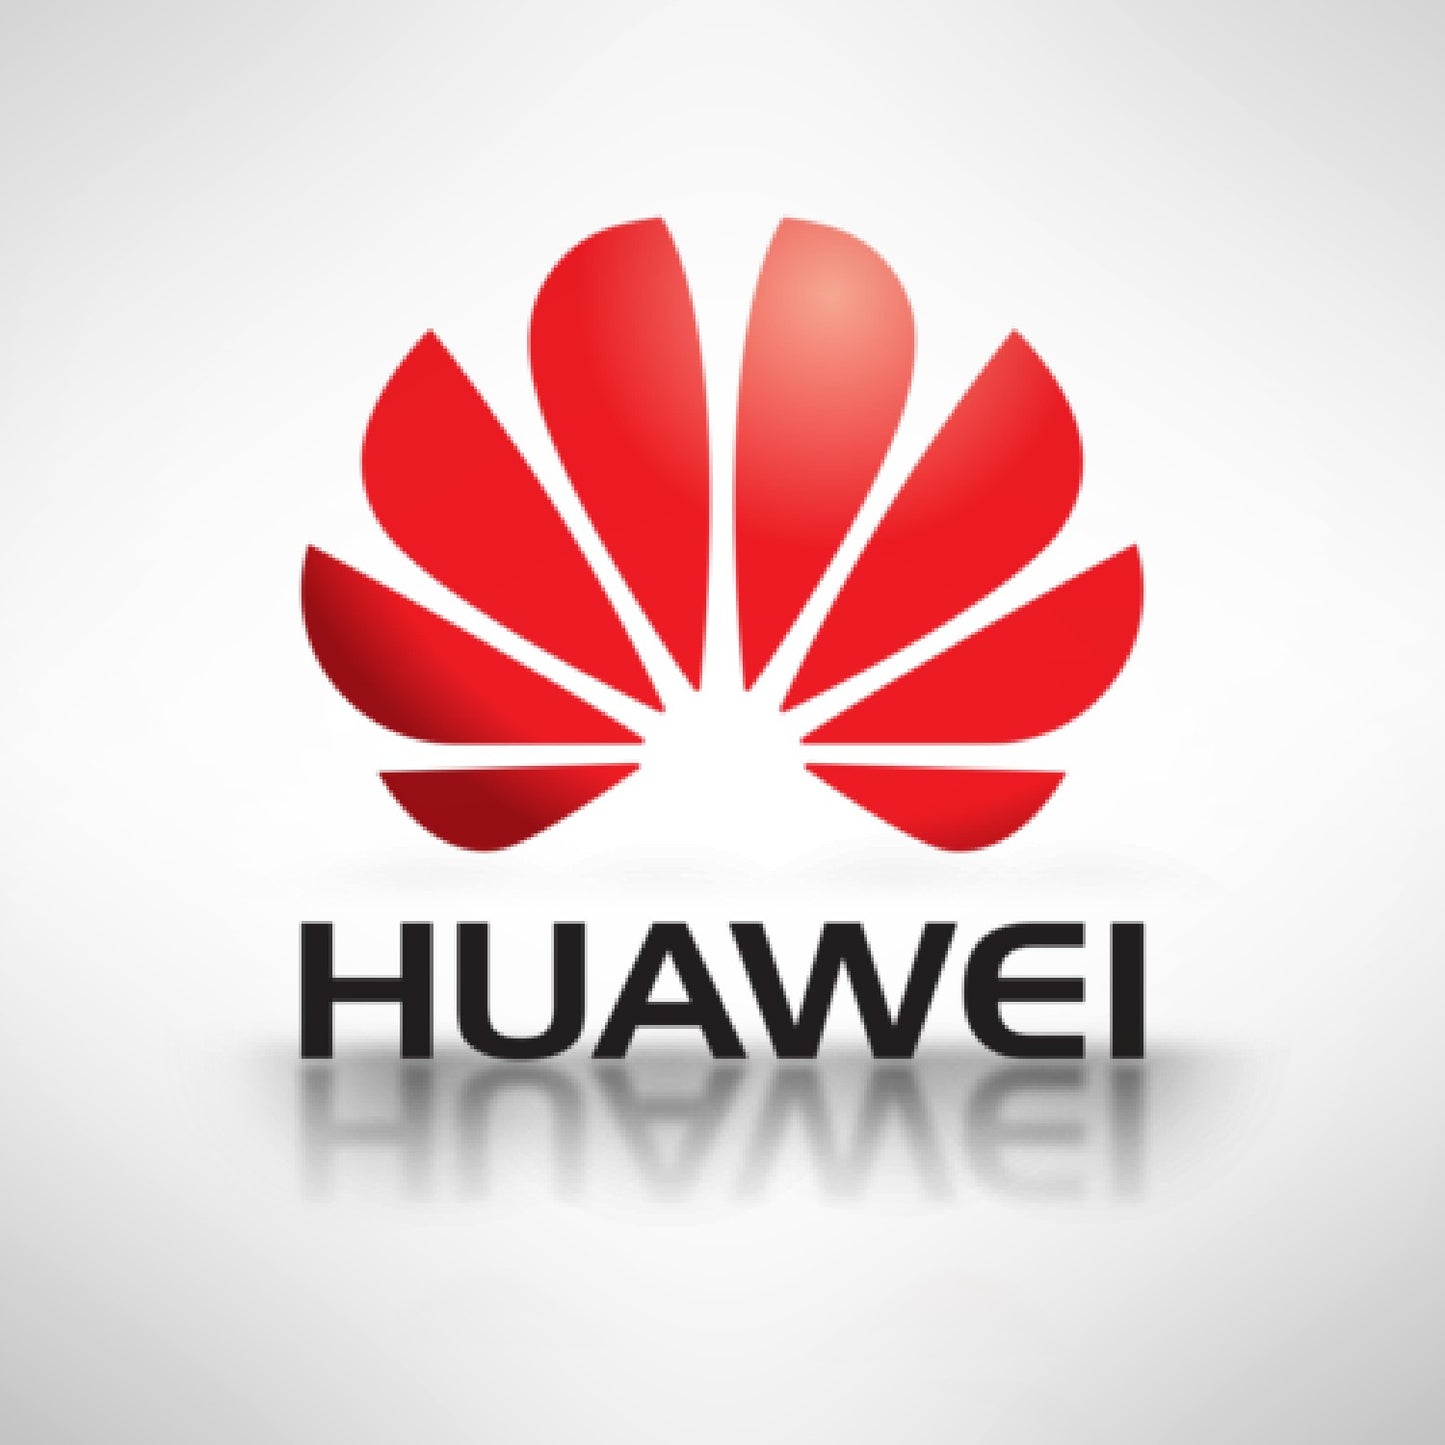 Huawei app development